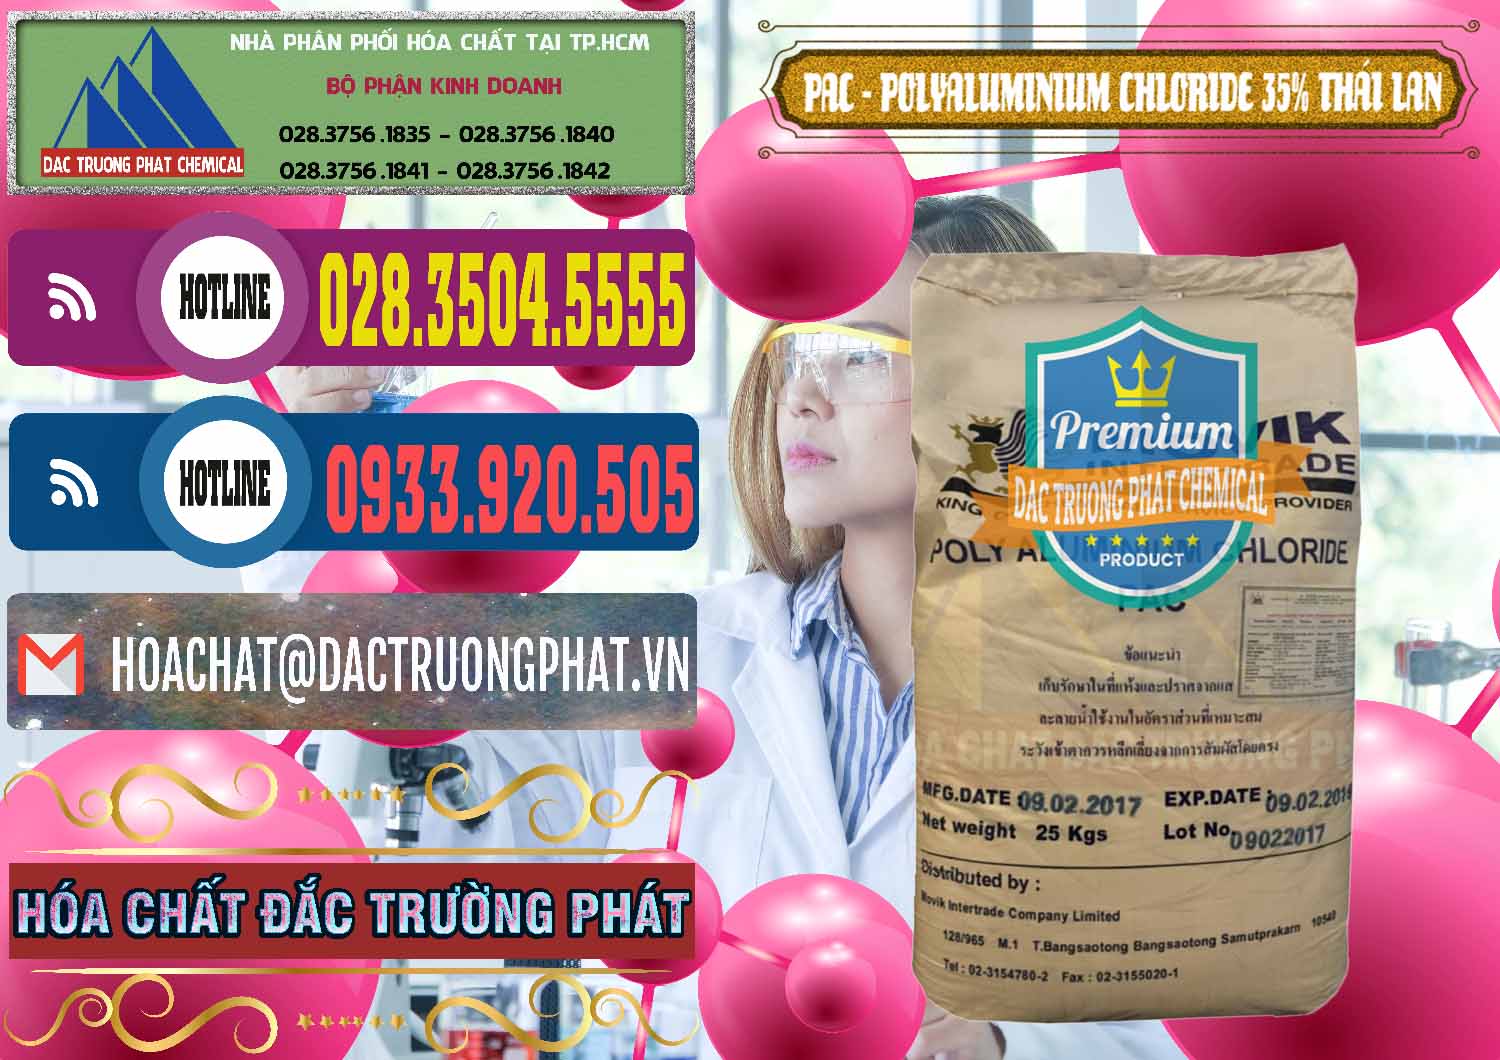 Chuyên bán và phân phối PAC - Polyaluminium Chloride 35% Thái Lan Thailand - 0470 - Nhà cung cấp và kinh doanh hóa chất tại TP.HCM - muabanhoachat.com.vn